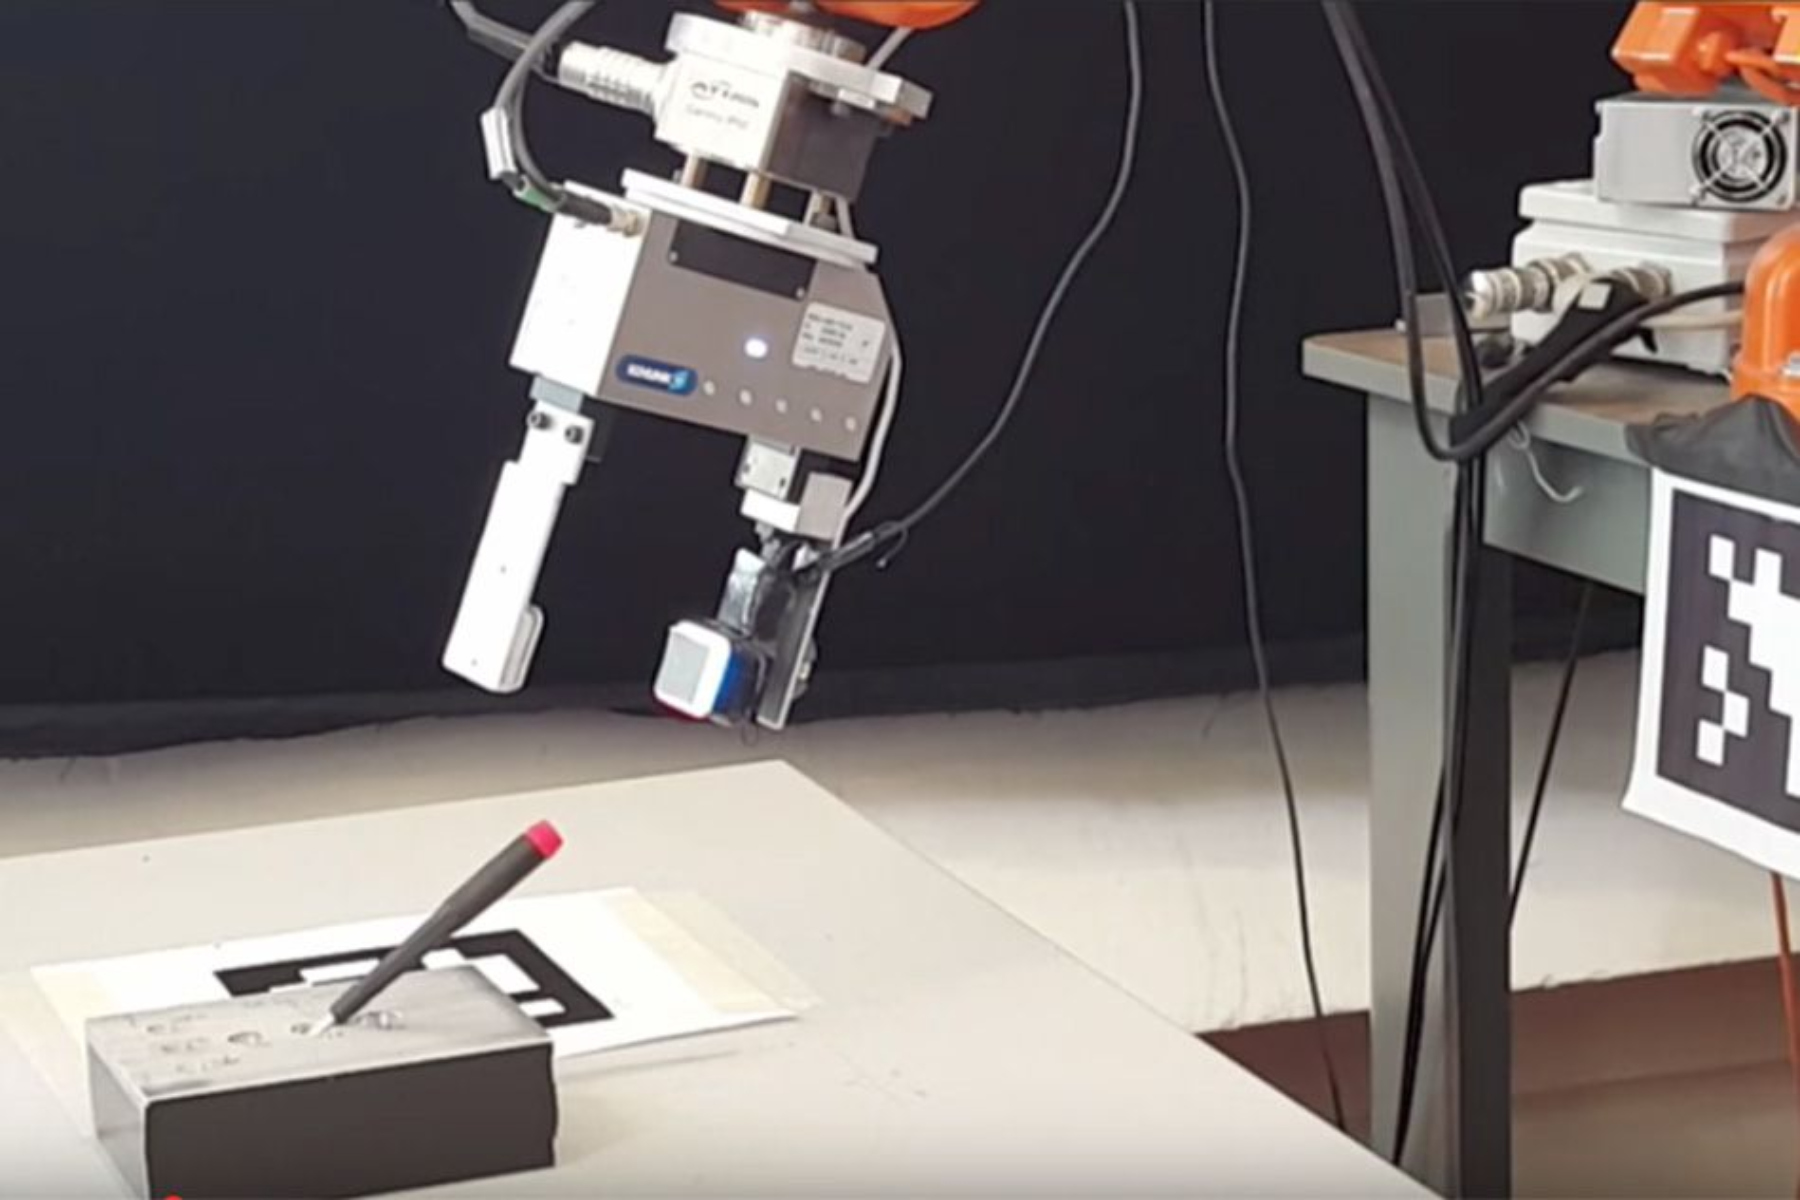 Ρομποτική: Η αίσθηση αφής βελτιώνει τον έλεγχο του ρομποτικού βραχίονα